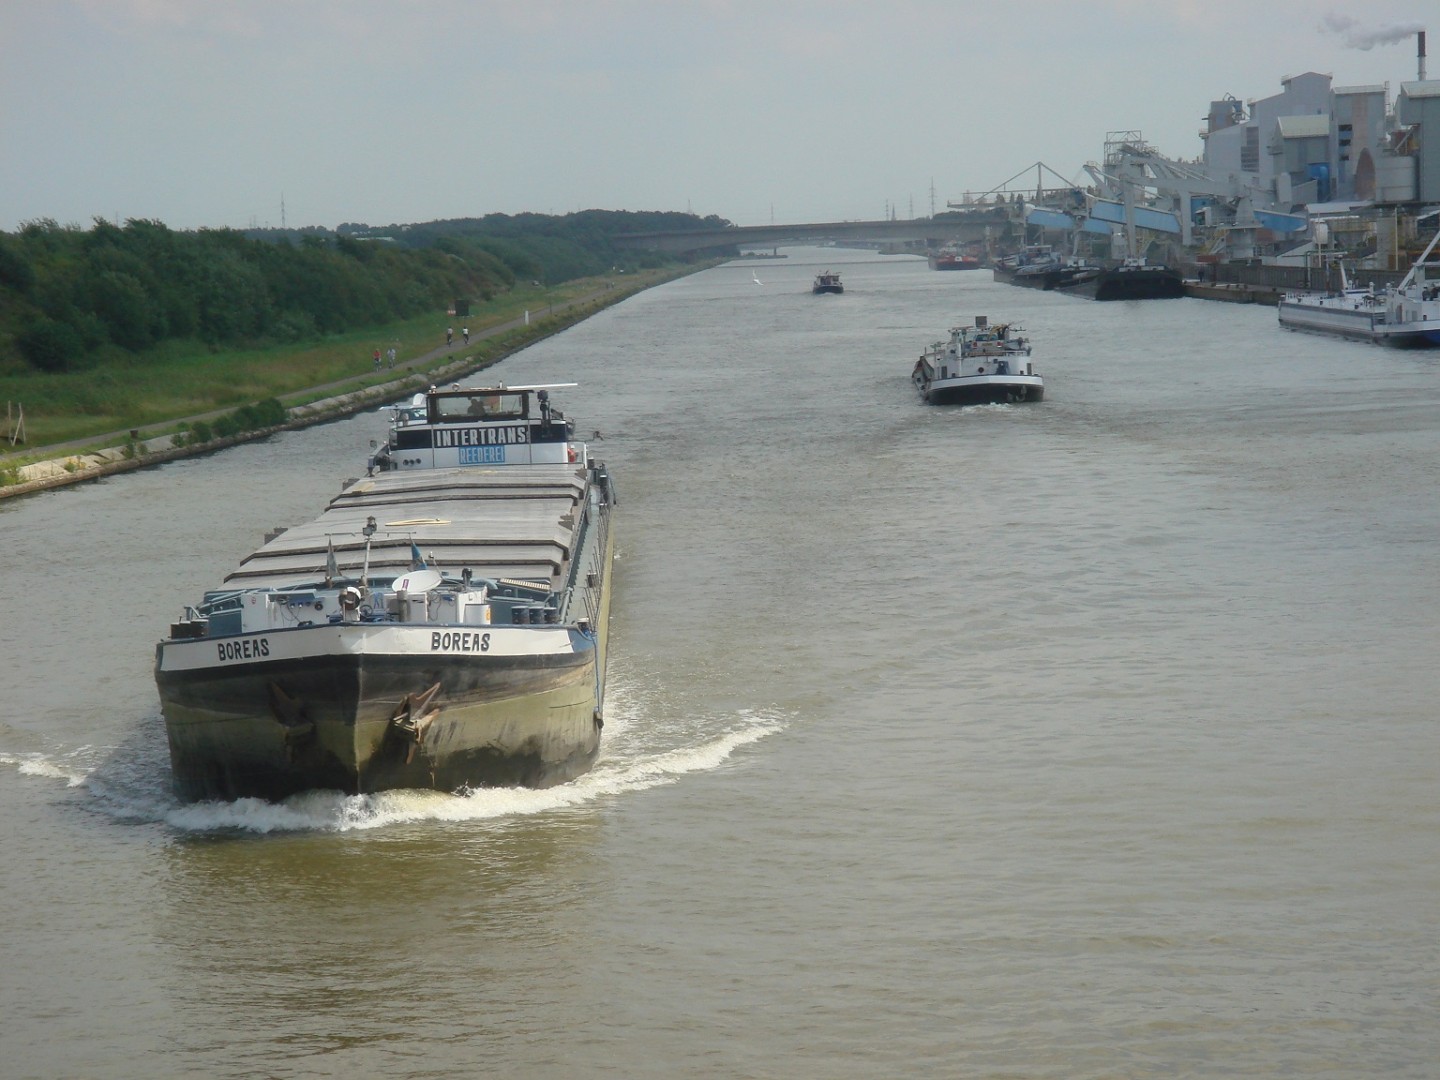 Binnenvaart in Vlaanderen ziet containertrafiek stijgen